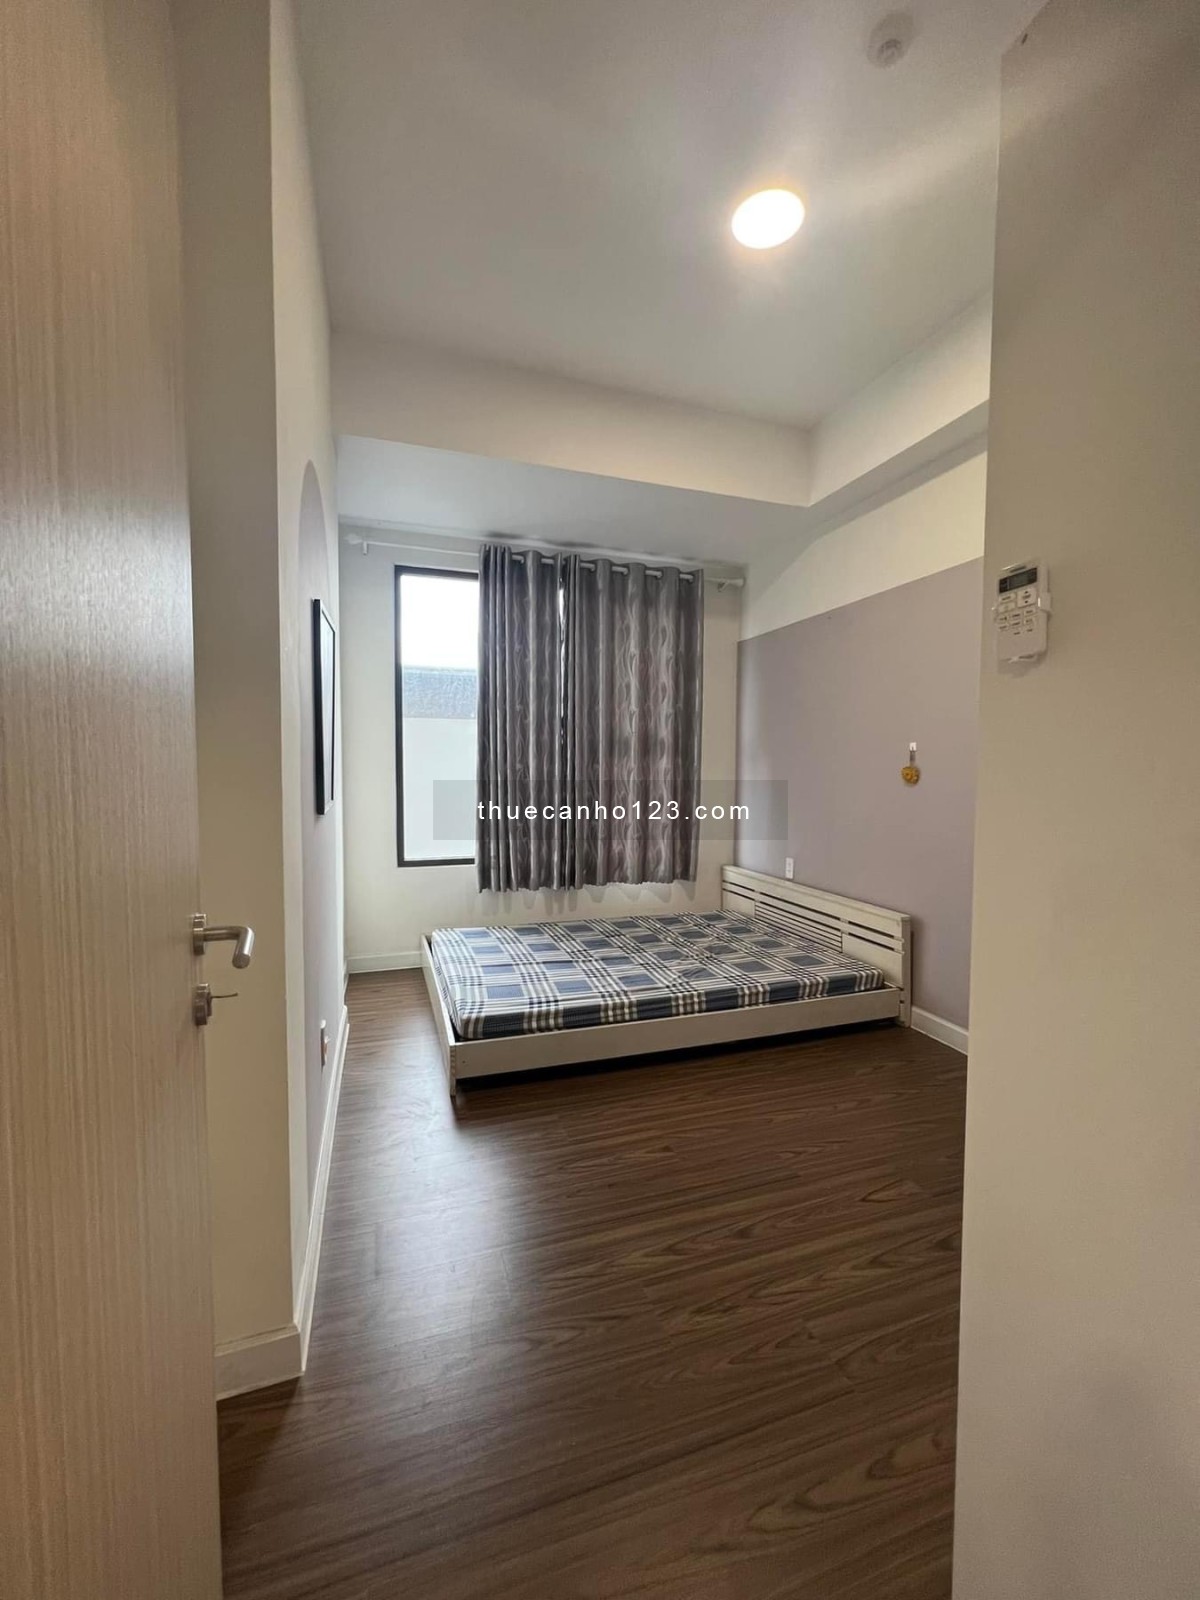 Cho thuê căn hộ Safira Khang Điền, 67m2 2PN - 2WC, nội thất như hình, giá chỉ 8tr5/tháng, vào ở ngay